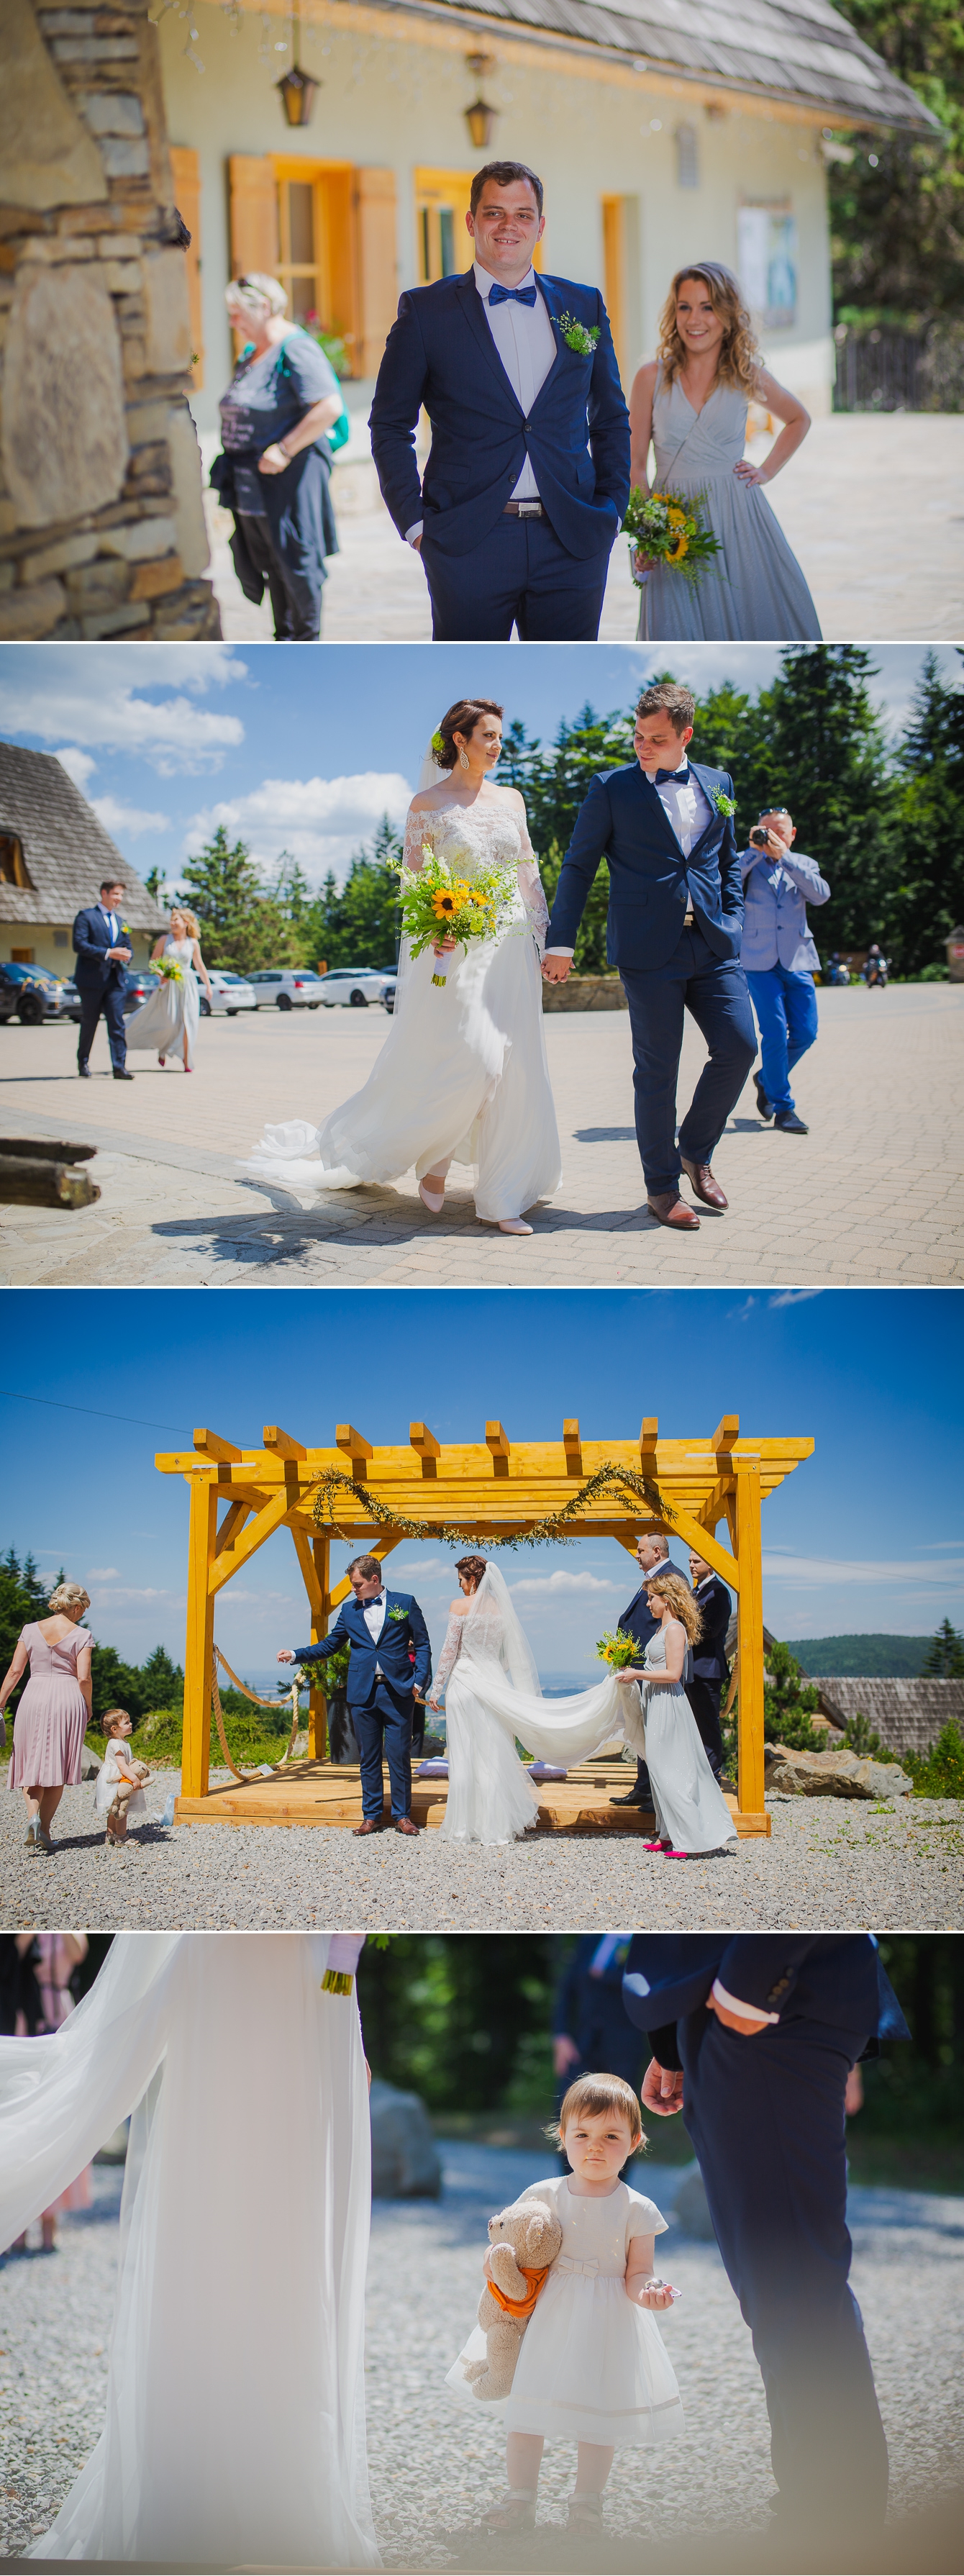 Ania i Damian - ślub w górach - Kocierz SPA - fotografia ślubna - bartek Wyrobek  (4).jpg